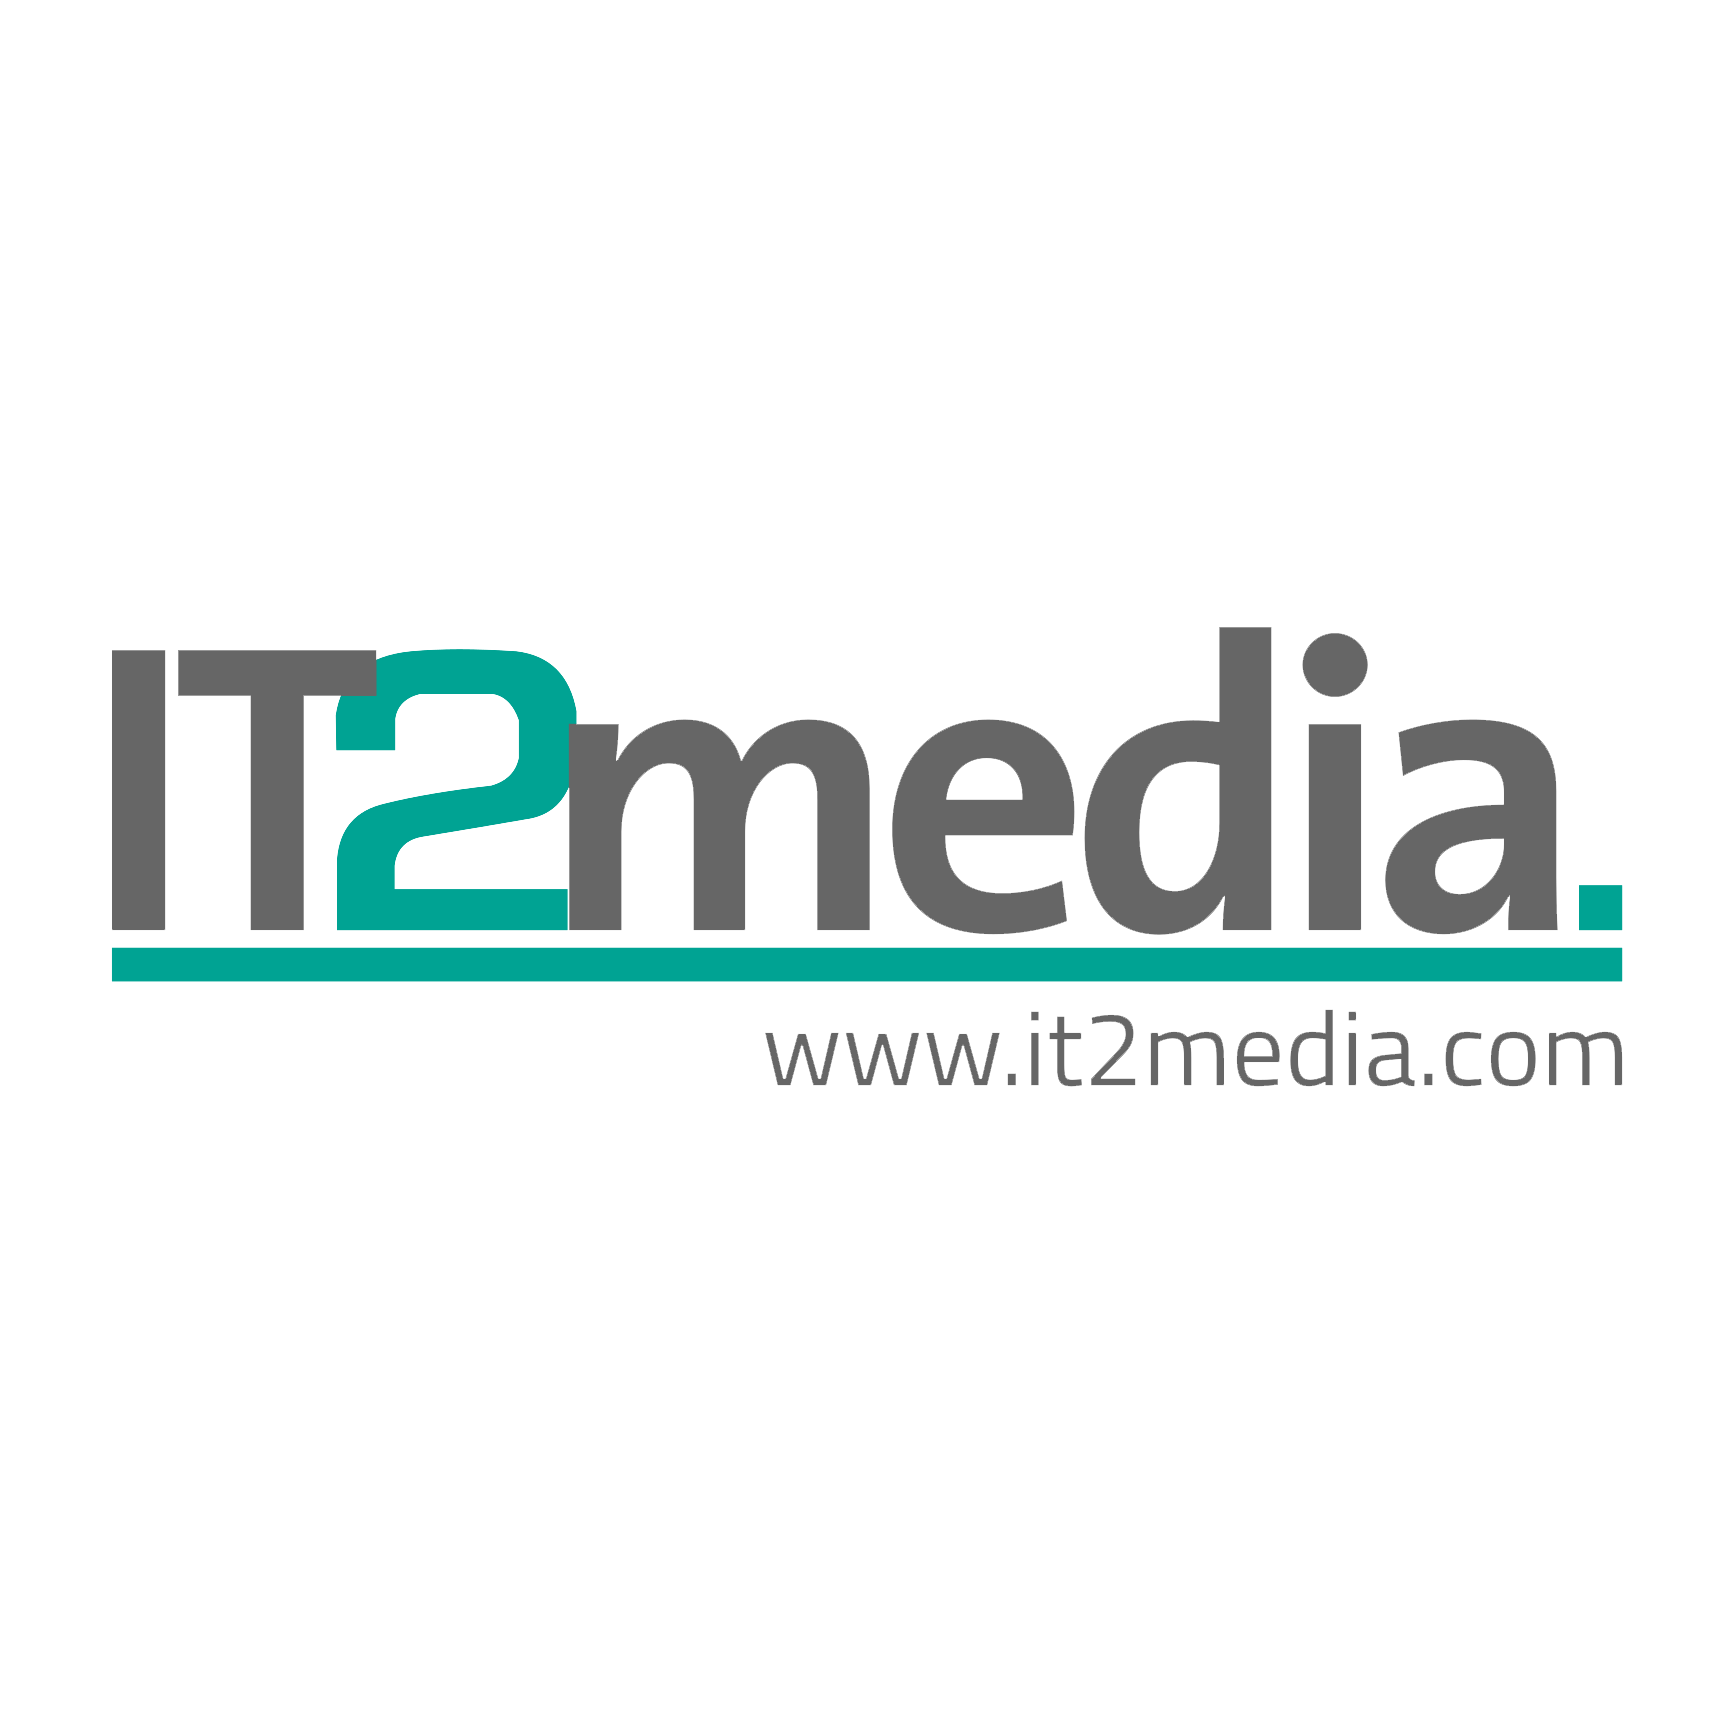 Logo von IT2media GmbH & Co. KG